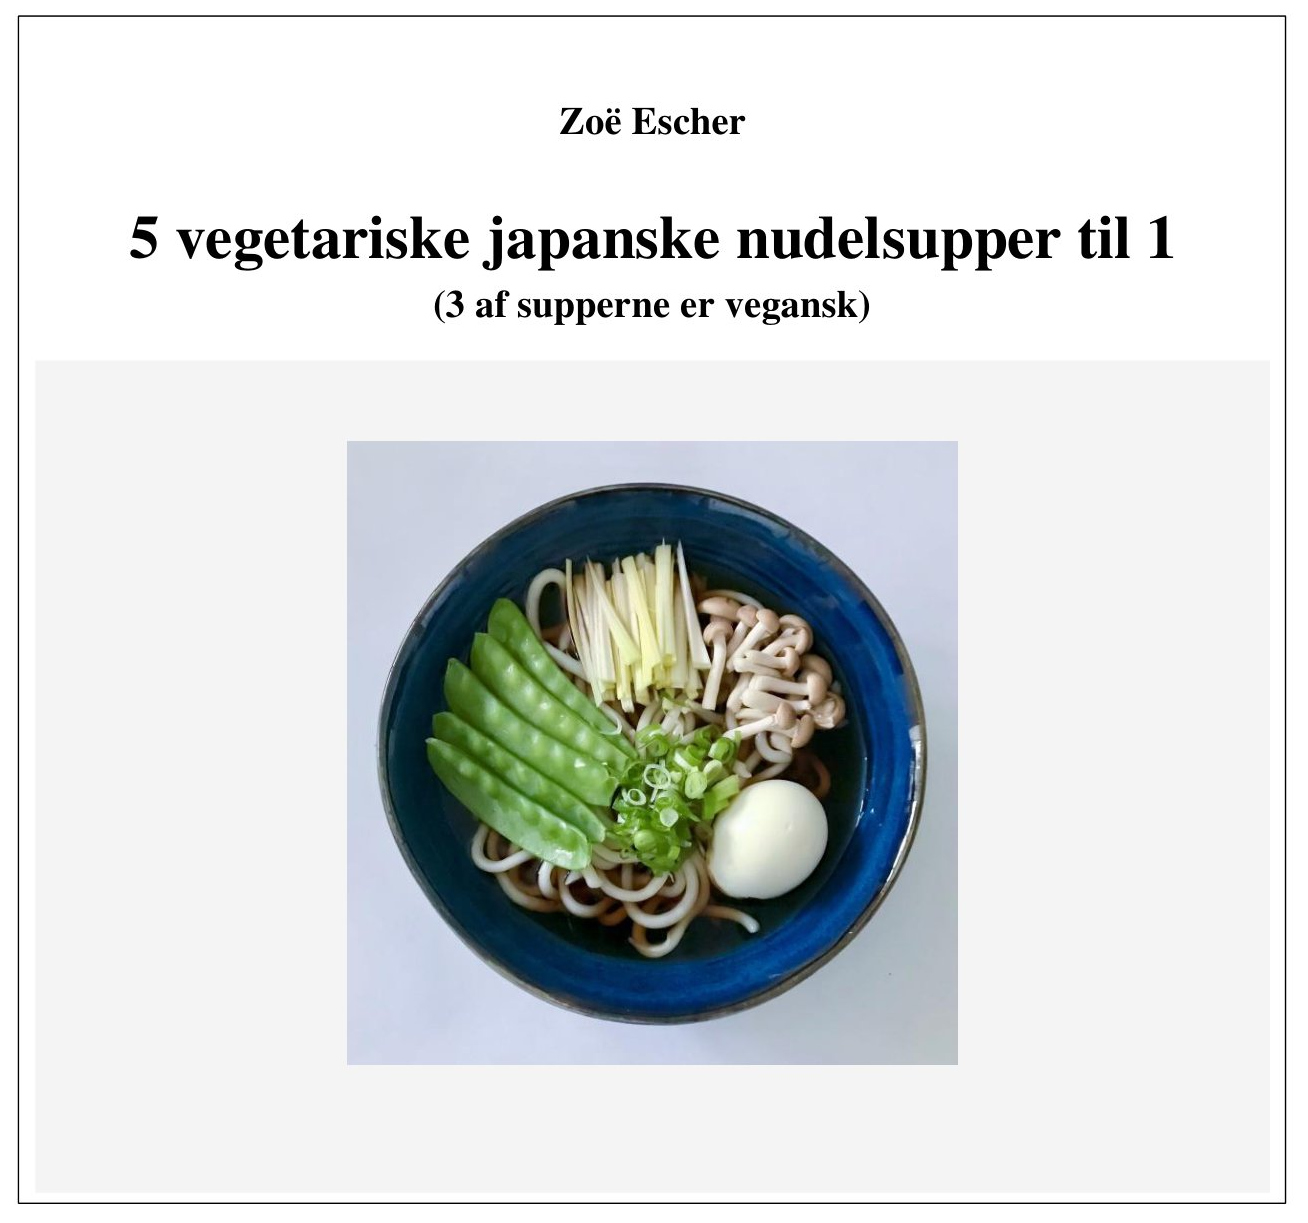 5 vegetariske japanske nudelsupper til en